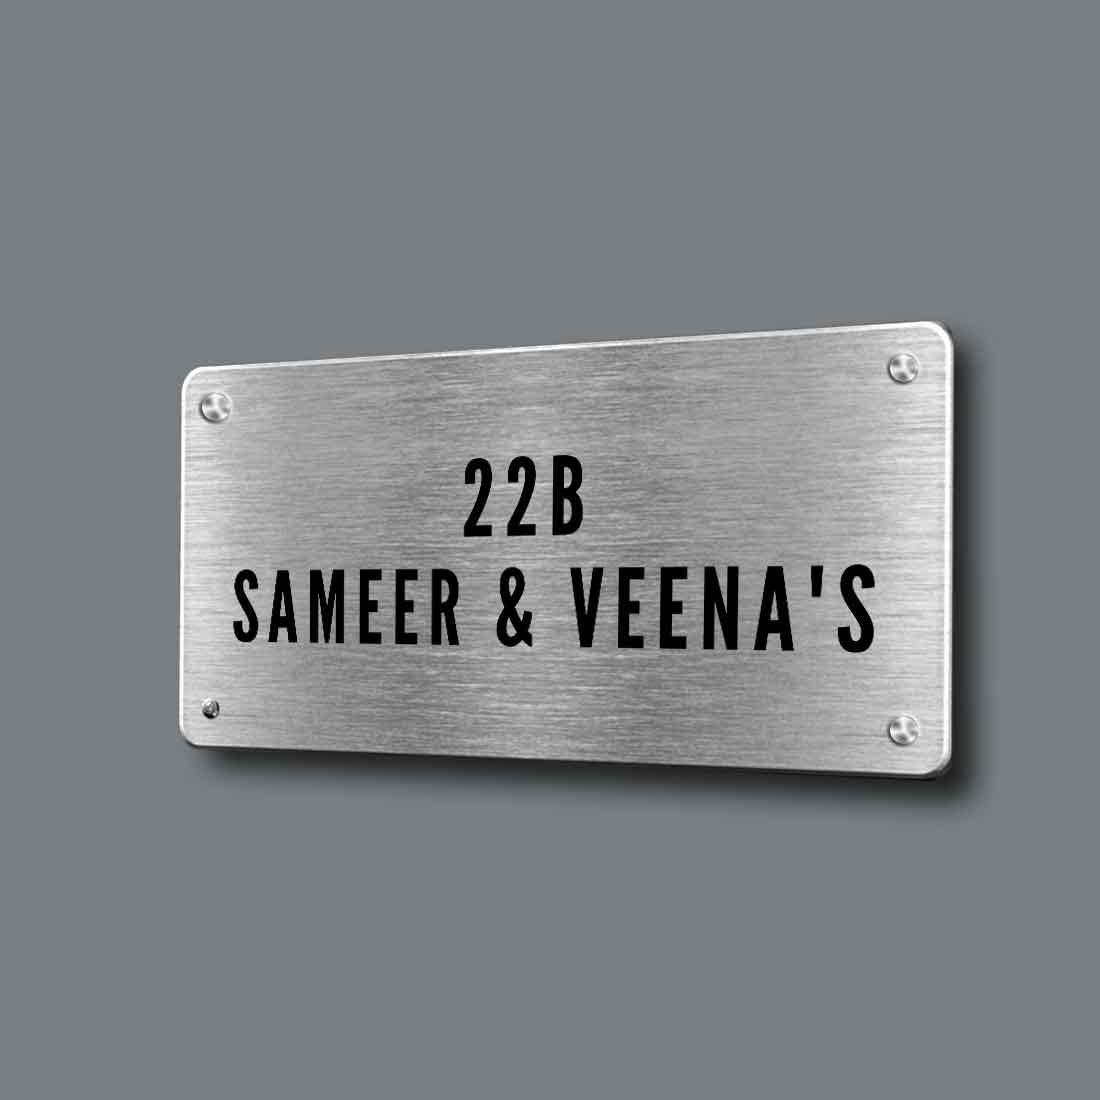 custom made metal name plates